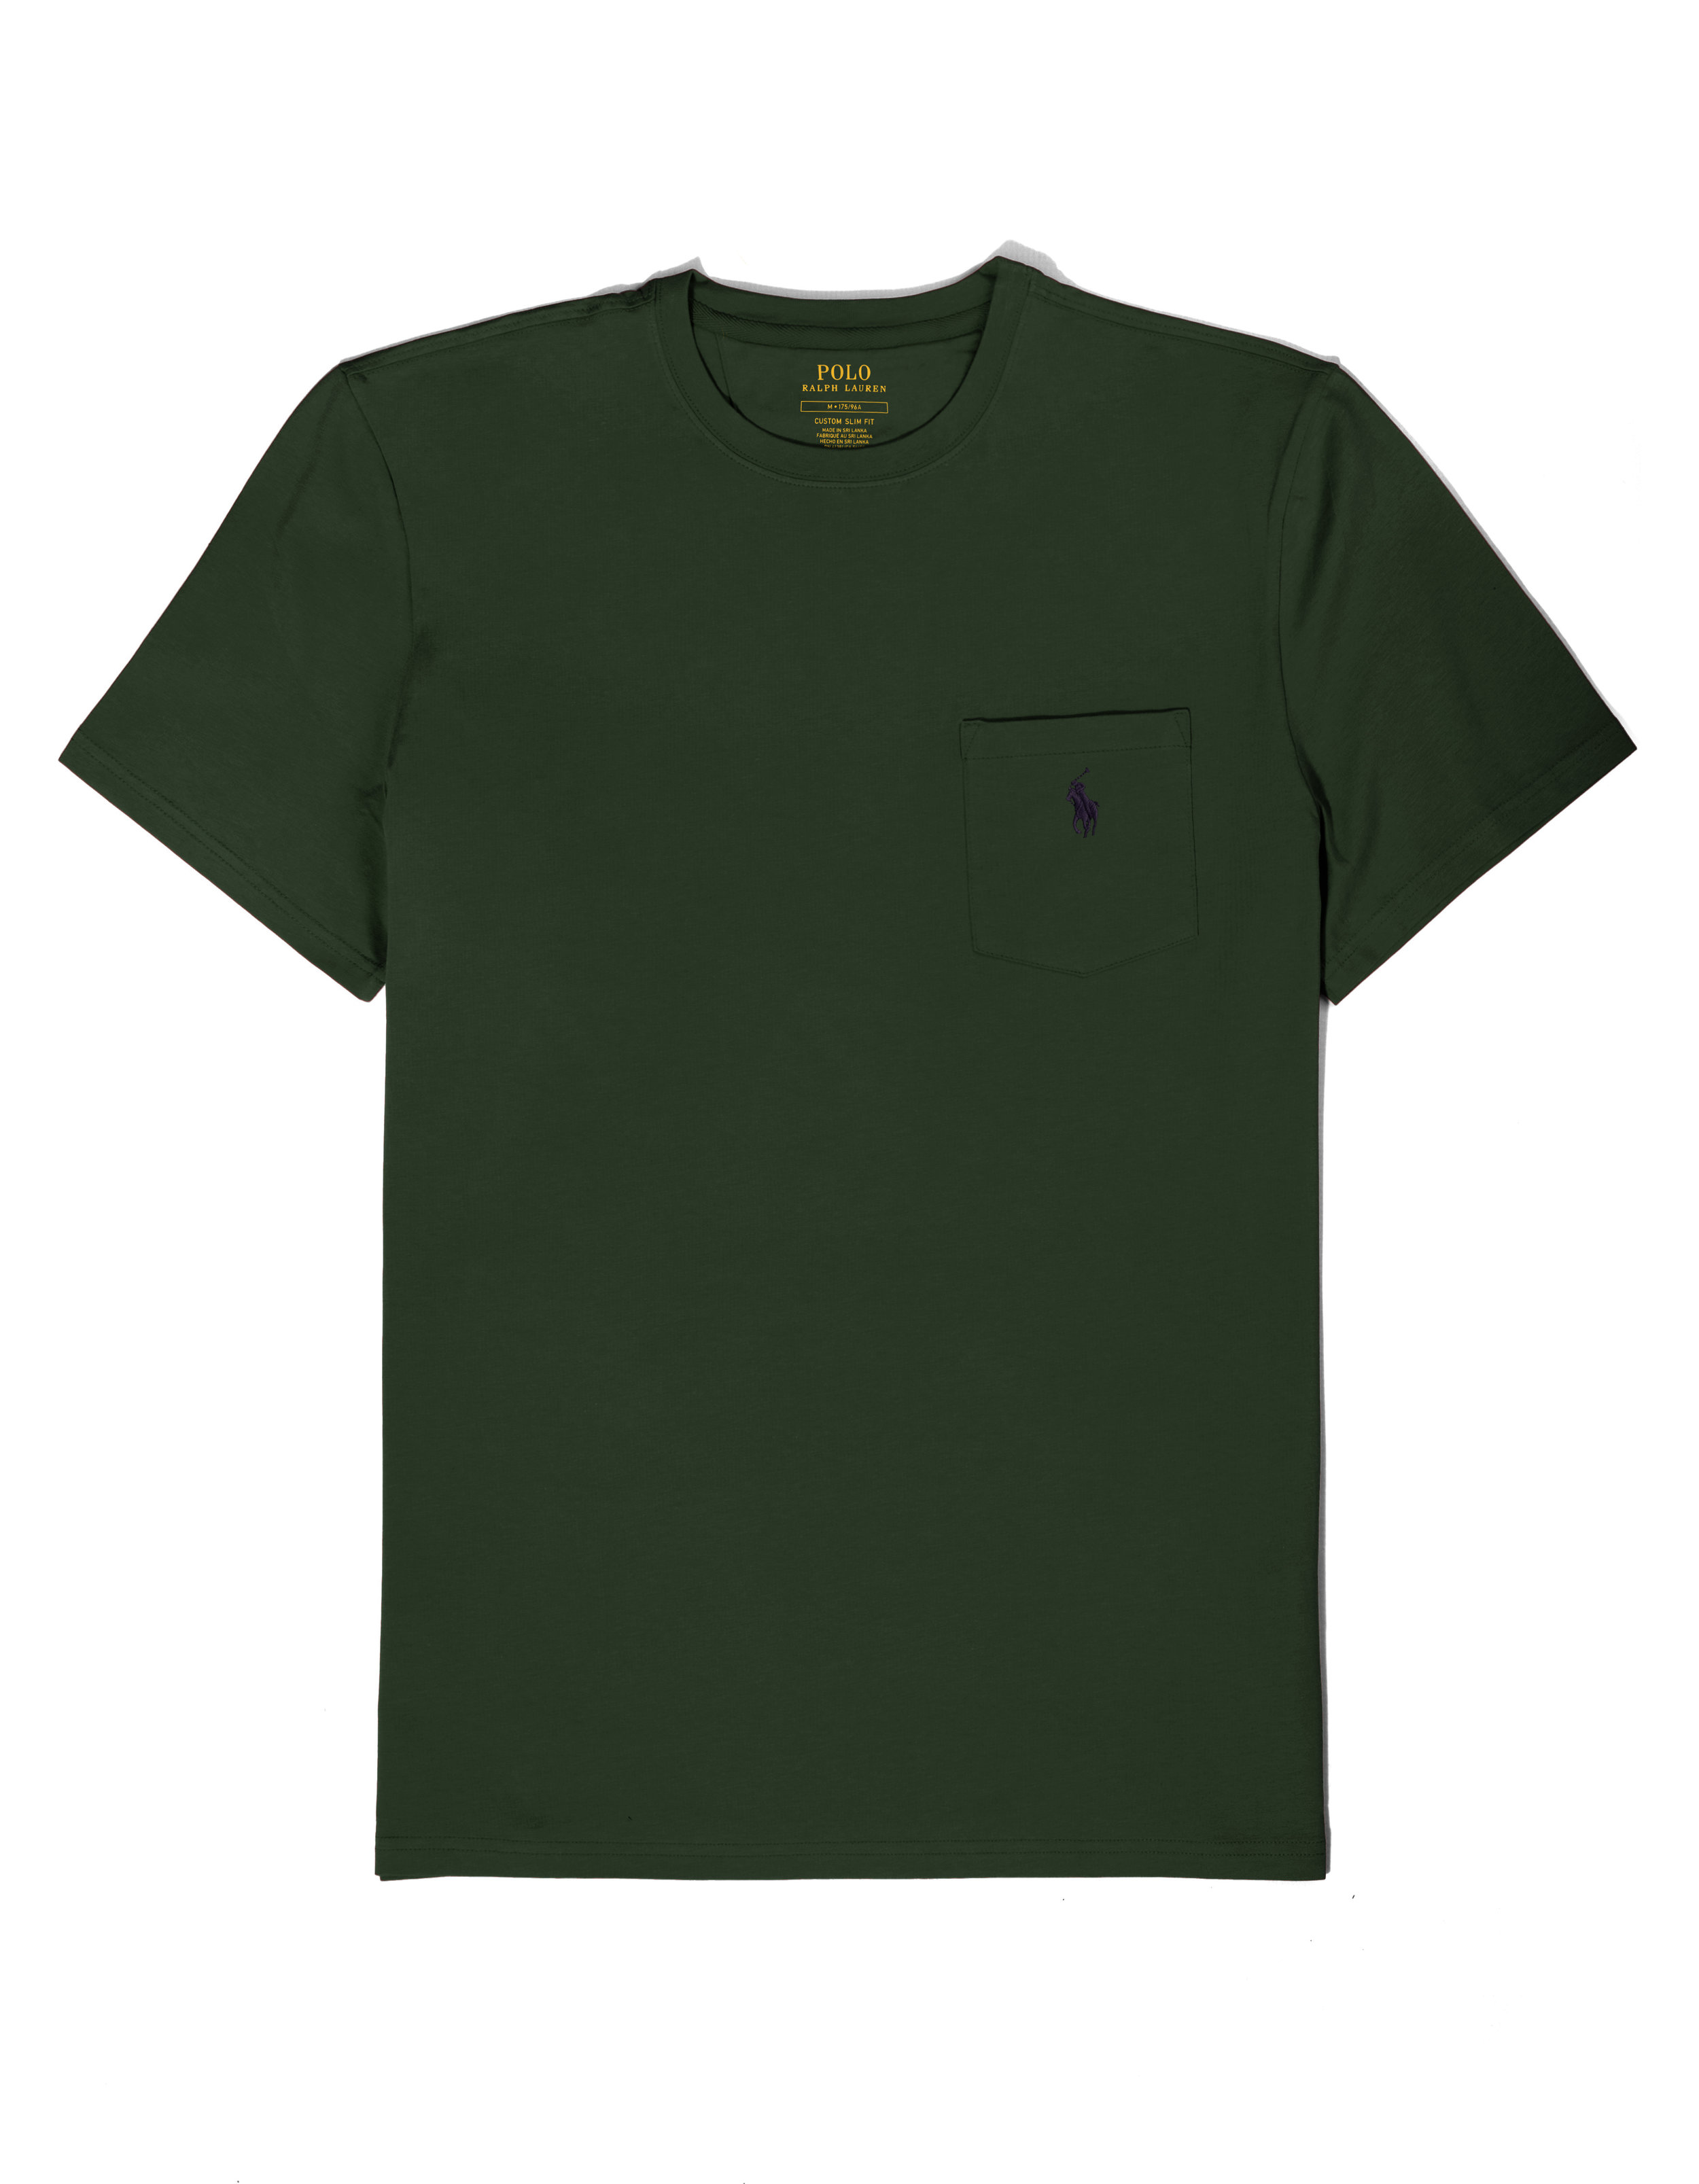 polo ralph lauren green t shirt